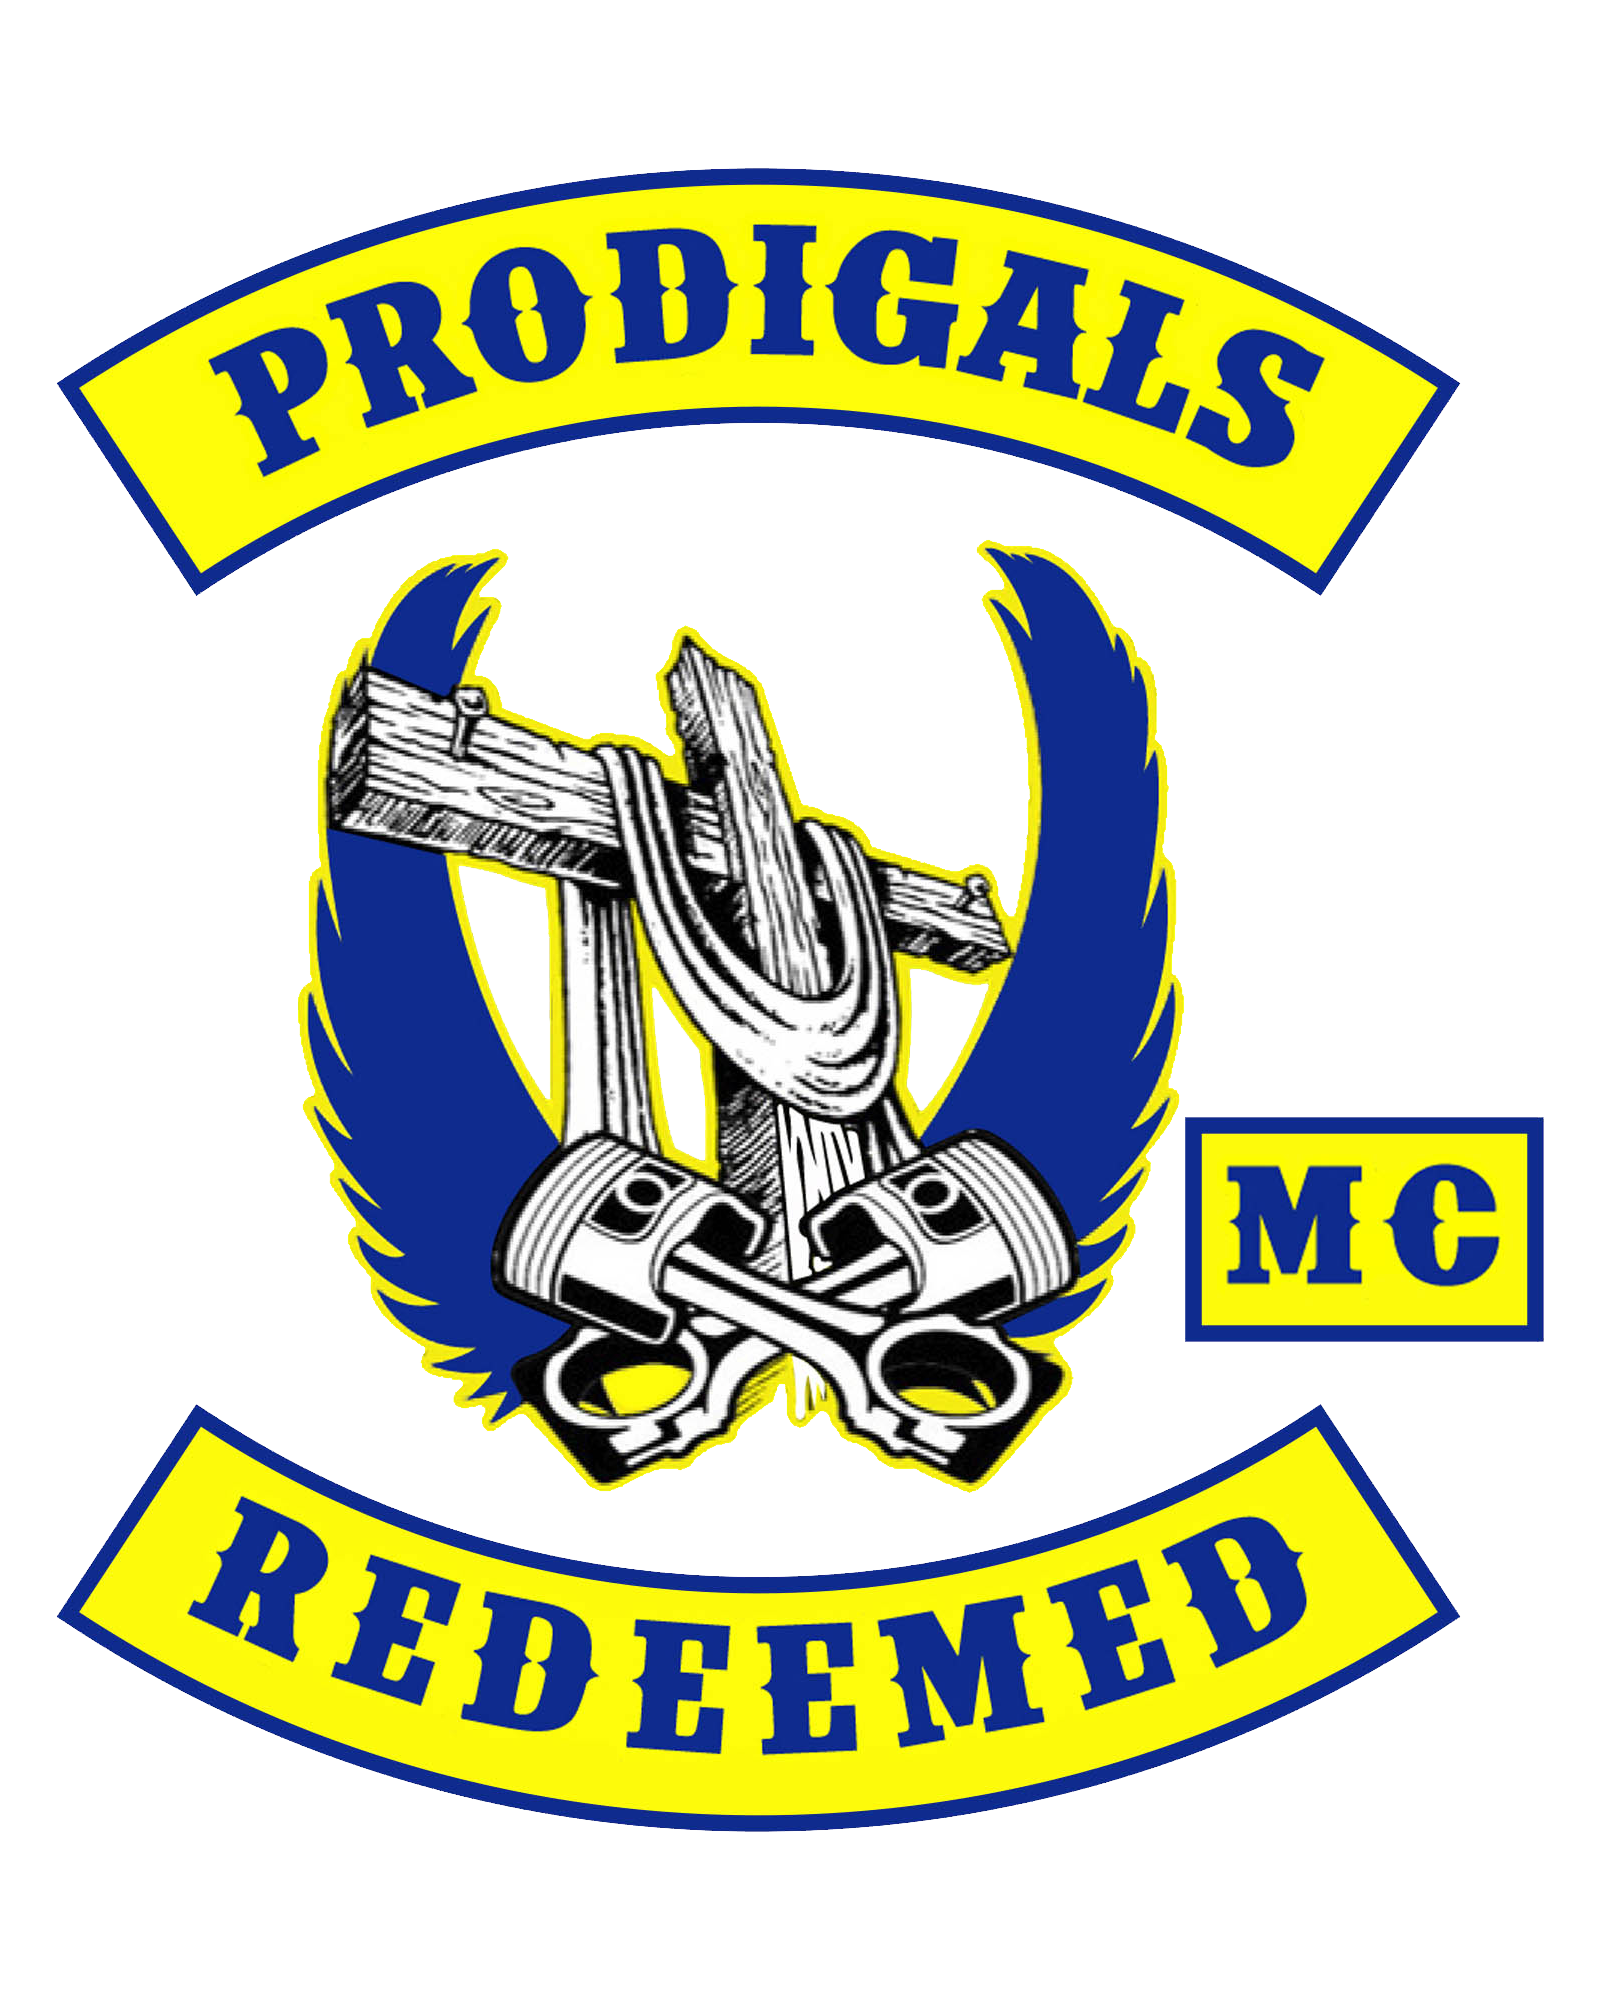 Prodigals Redeemed MC